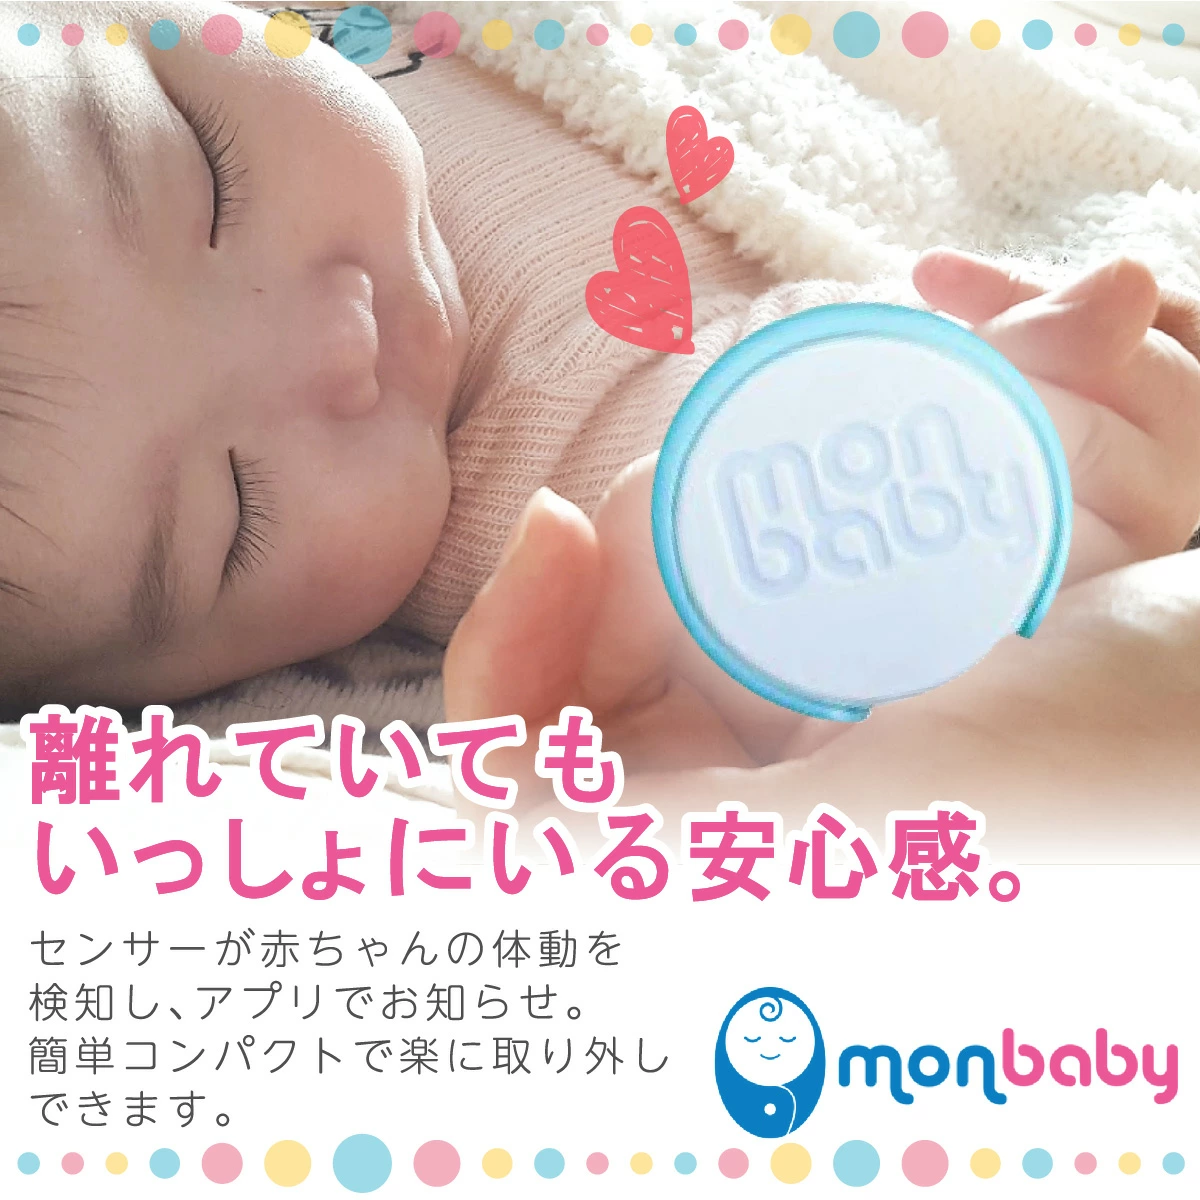 MonBaby スマートボタン体動センサー - 株式会社プレシャスケア